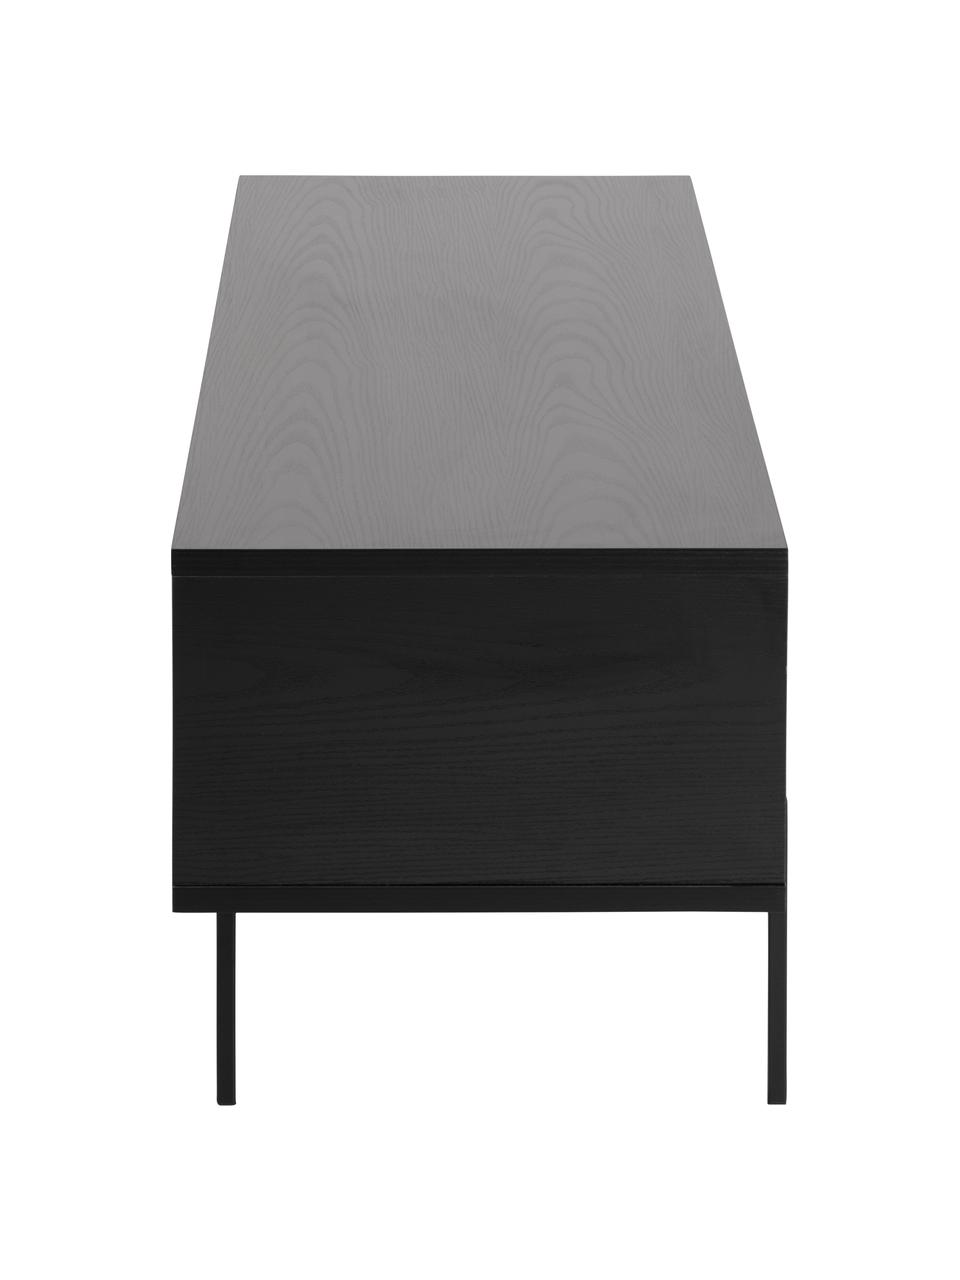 Tv-meubel Angus in zwart, Frame: MDF, melamine bekleed, Poten: gepoedercoat metaal, Zwart, 140 x 45 cm